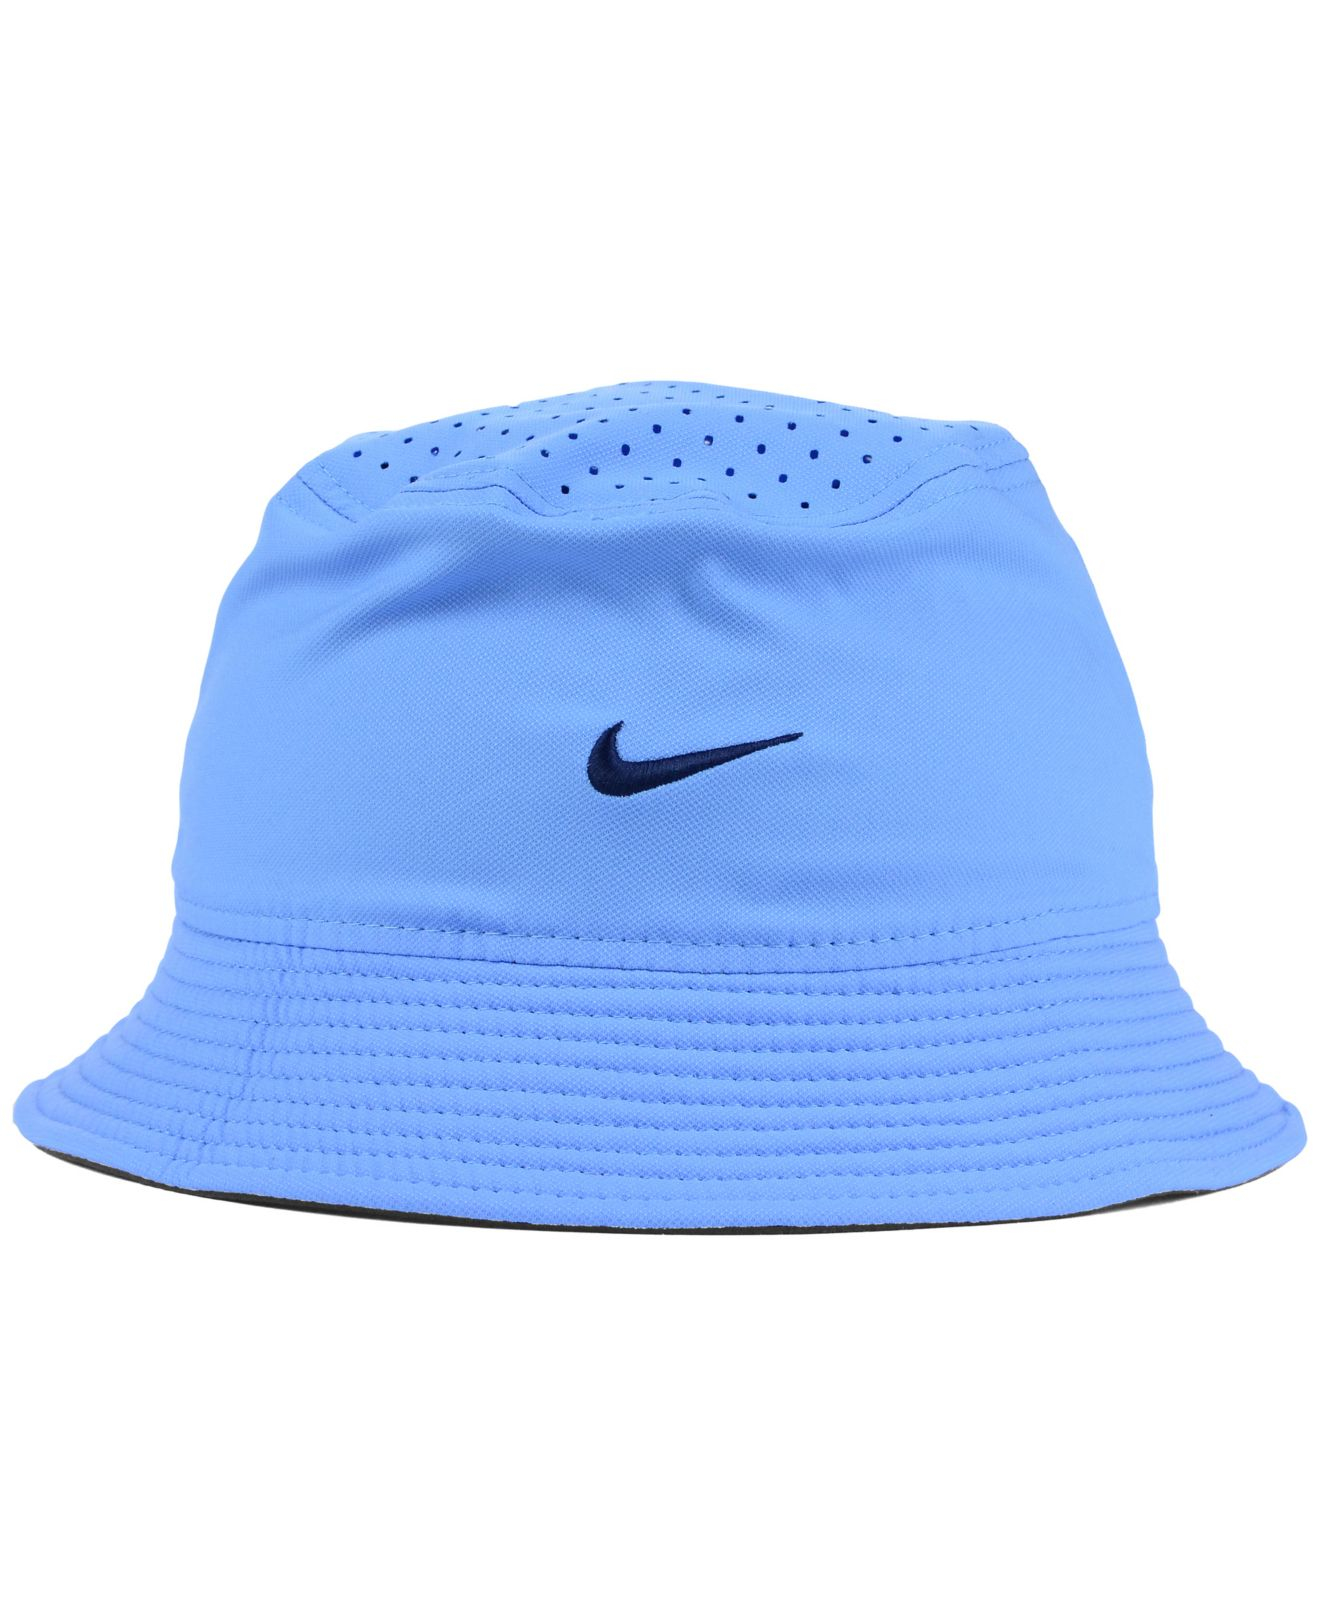 Lyst - Nike North Carolina Tar Heels Vapor Bucket Hat in ...